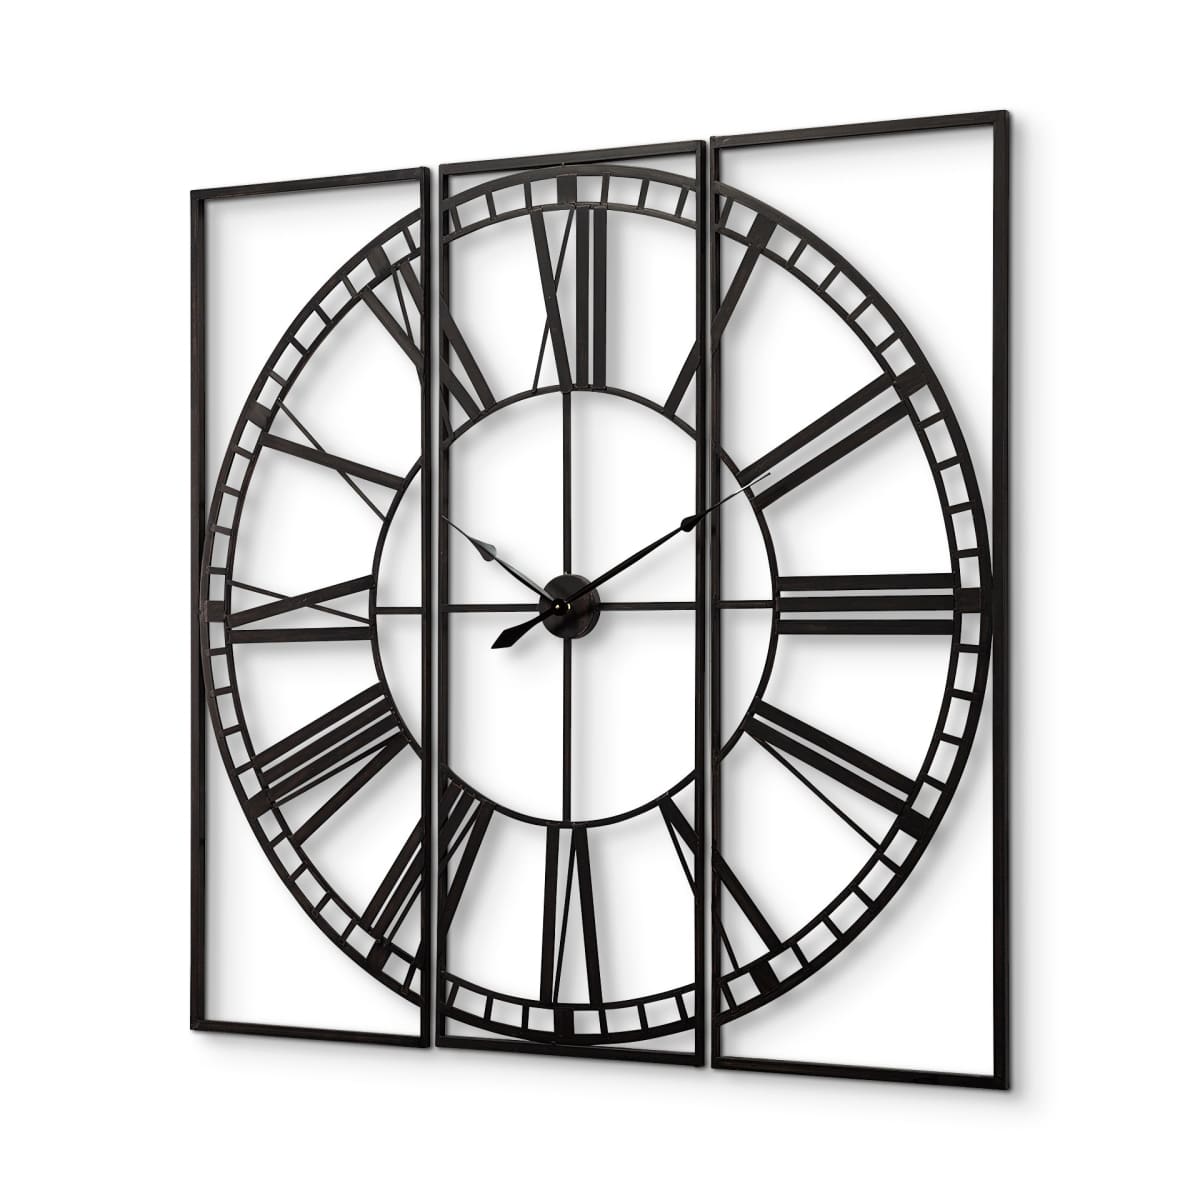 Norwood Wall Clock Black Metal | 60 - wall-clocks